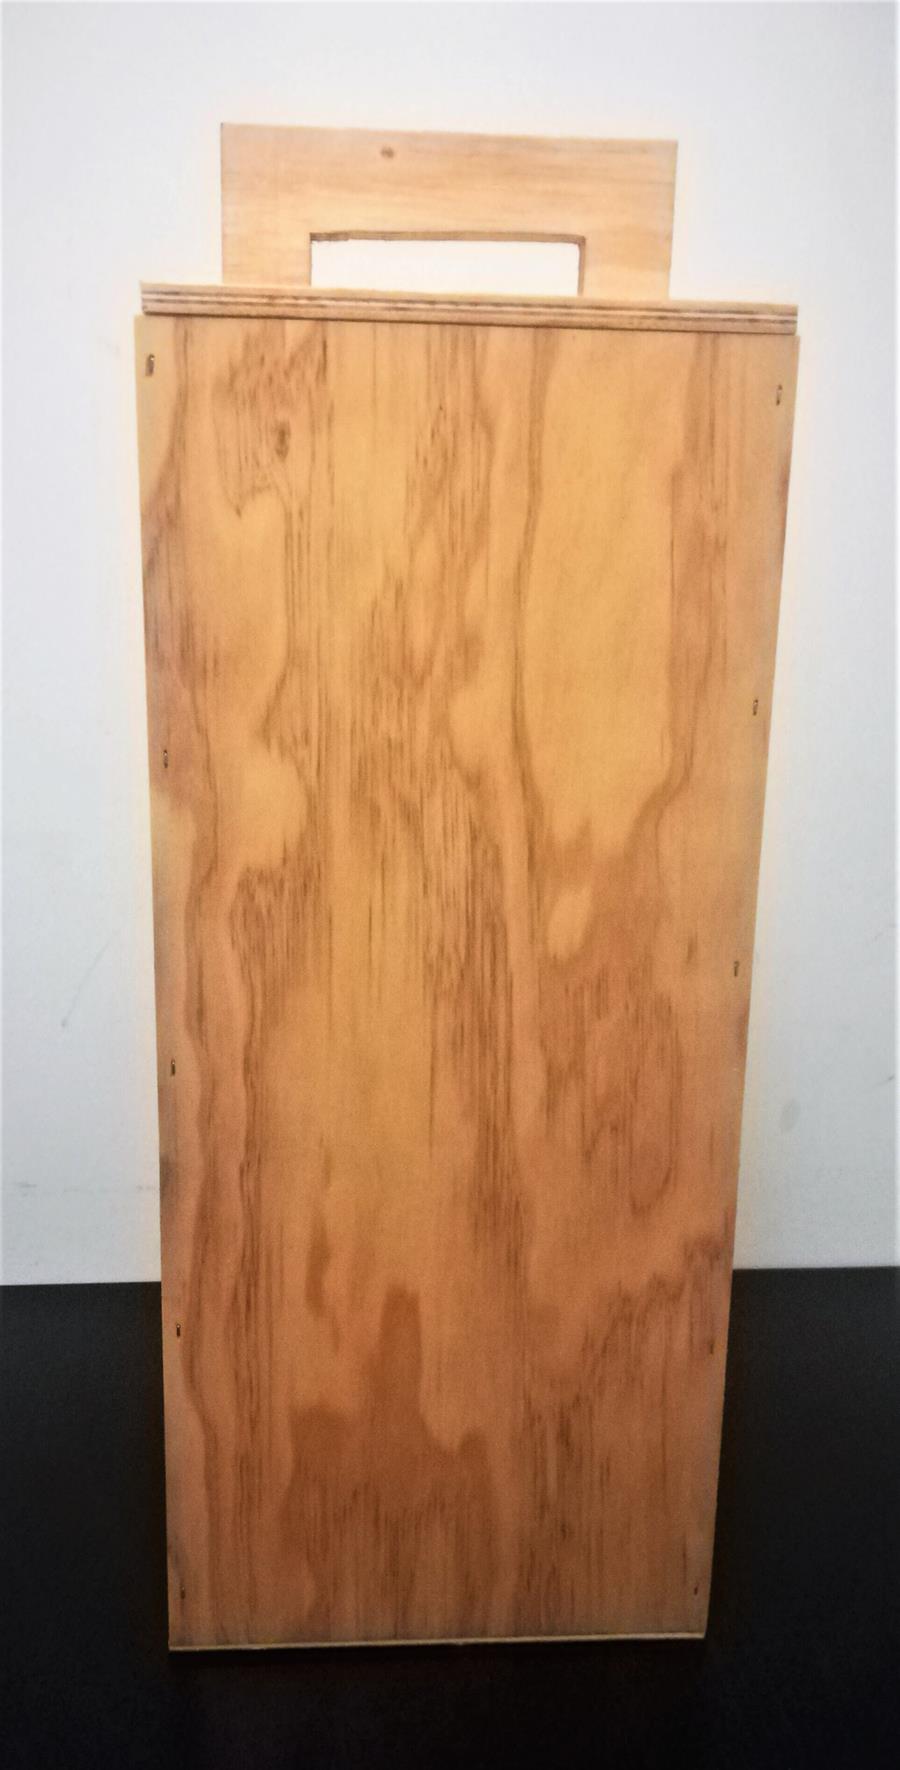 Capsa de fusta - Paperera (50cm x 20cm x 20cm) | M- CF | MUNDO ECOLÓGICO